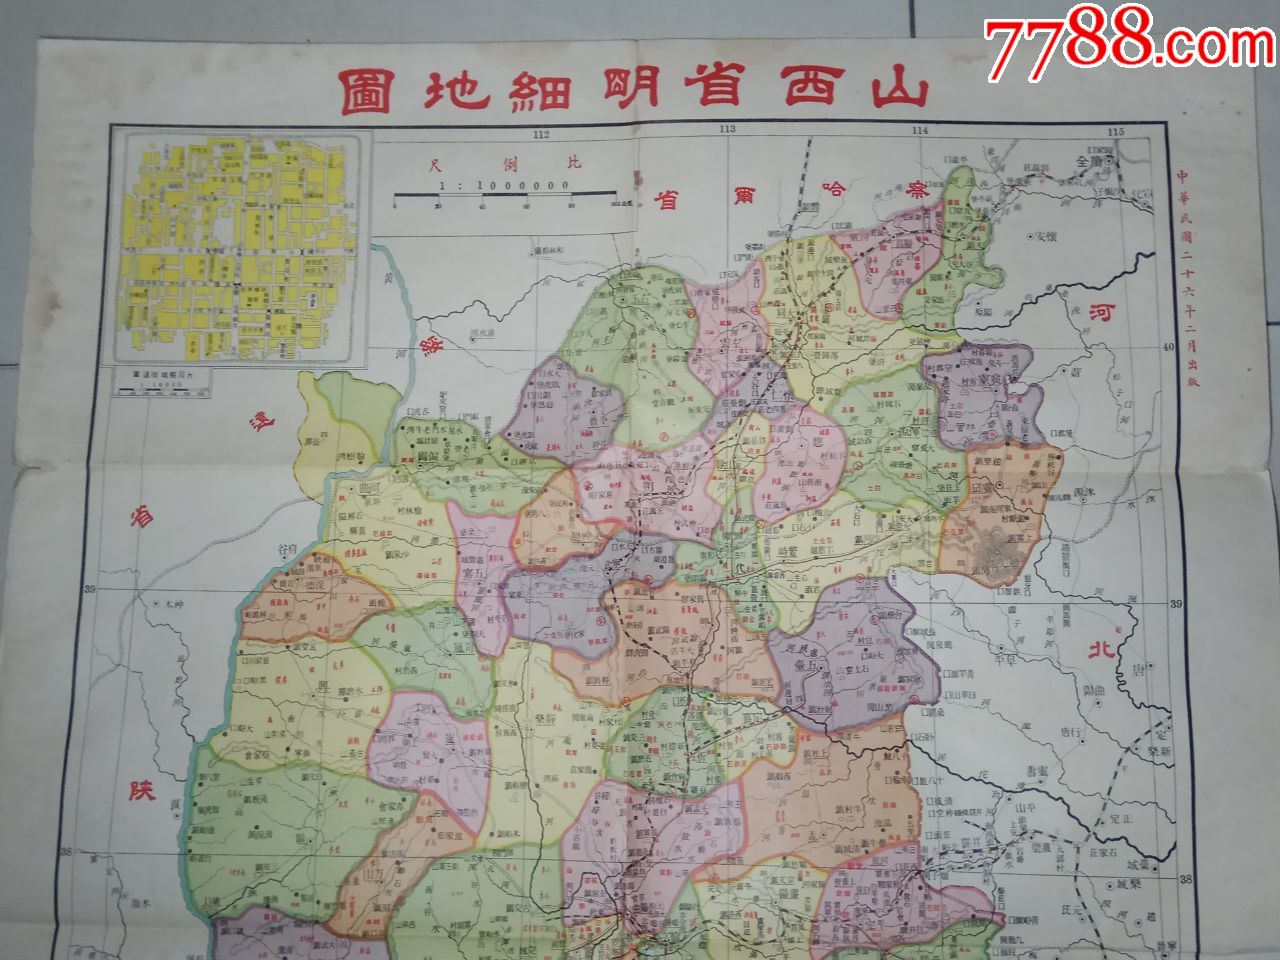 民国26年(1937年)初版地图:山西省明细地图;少见